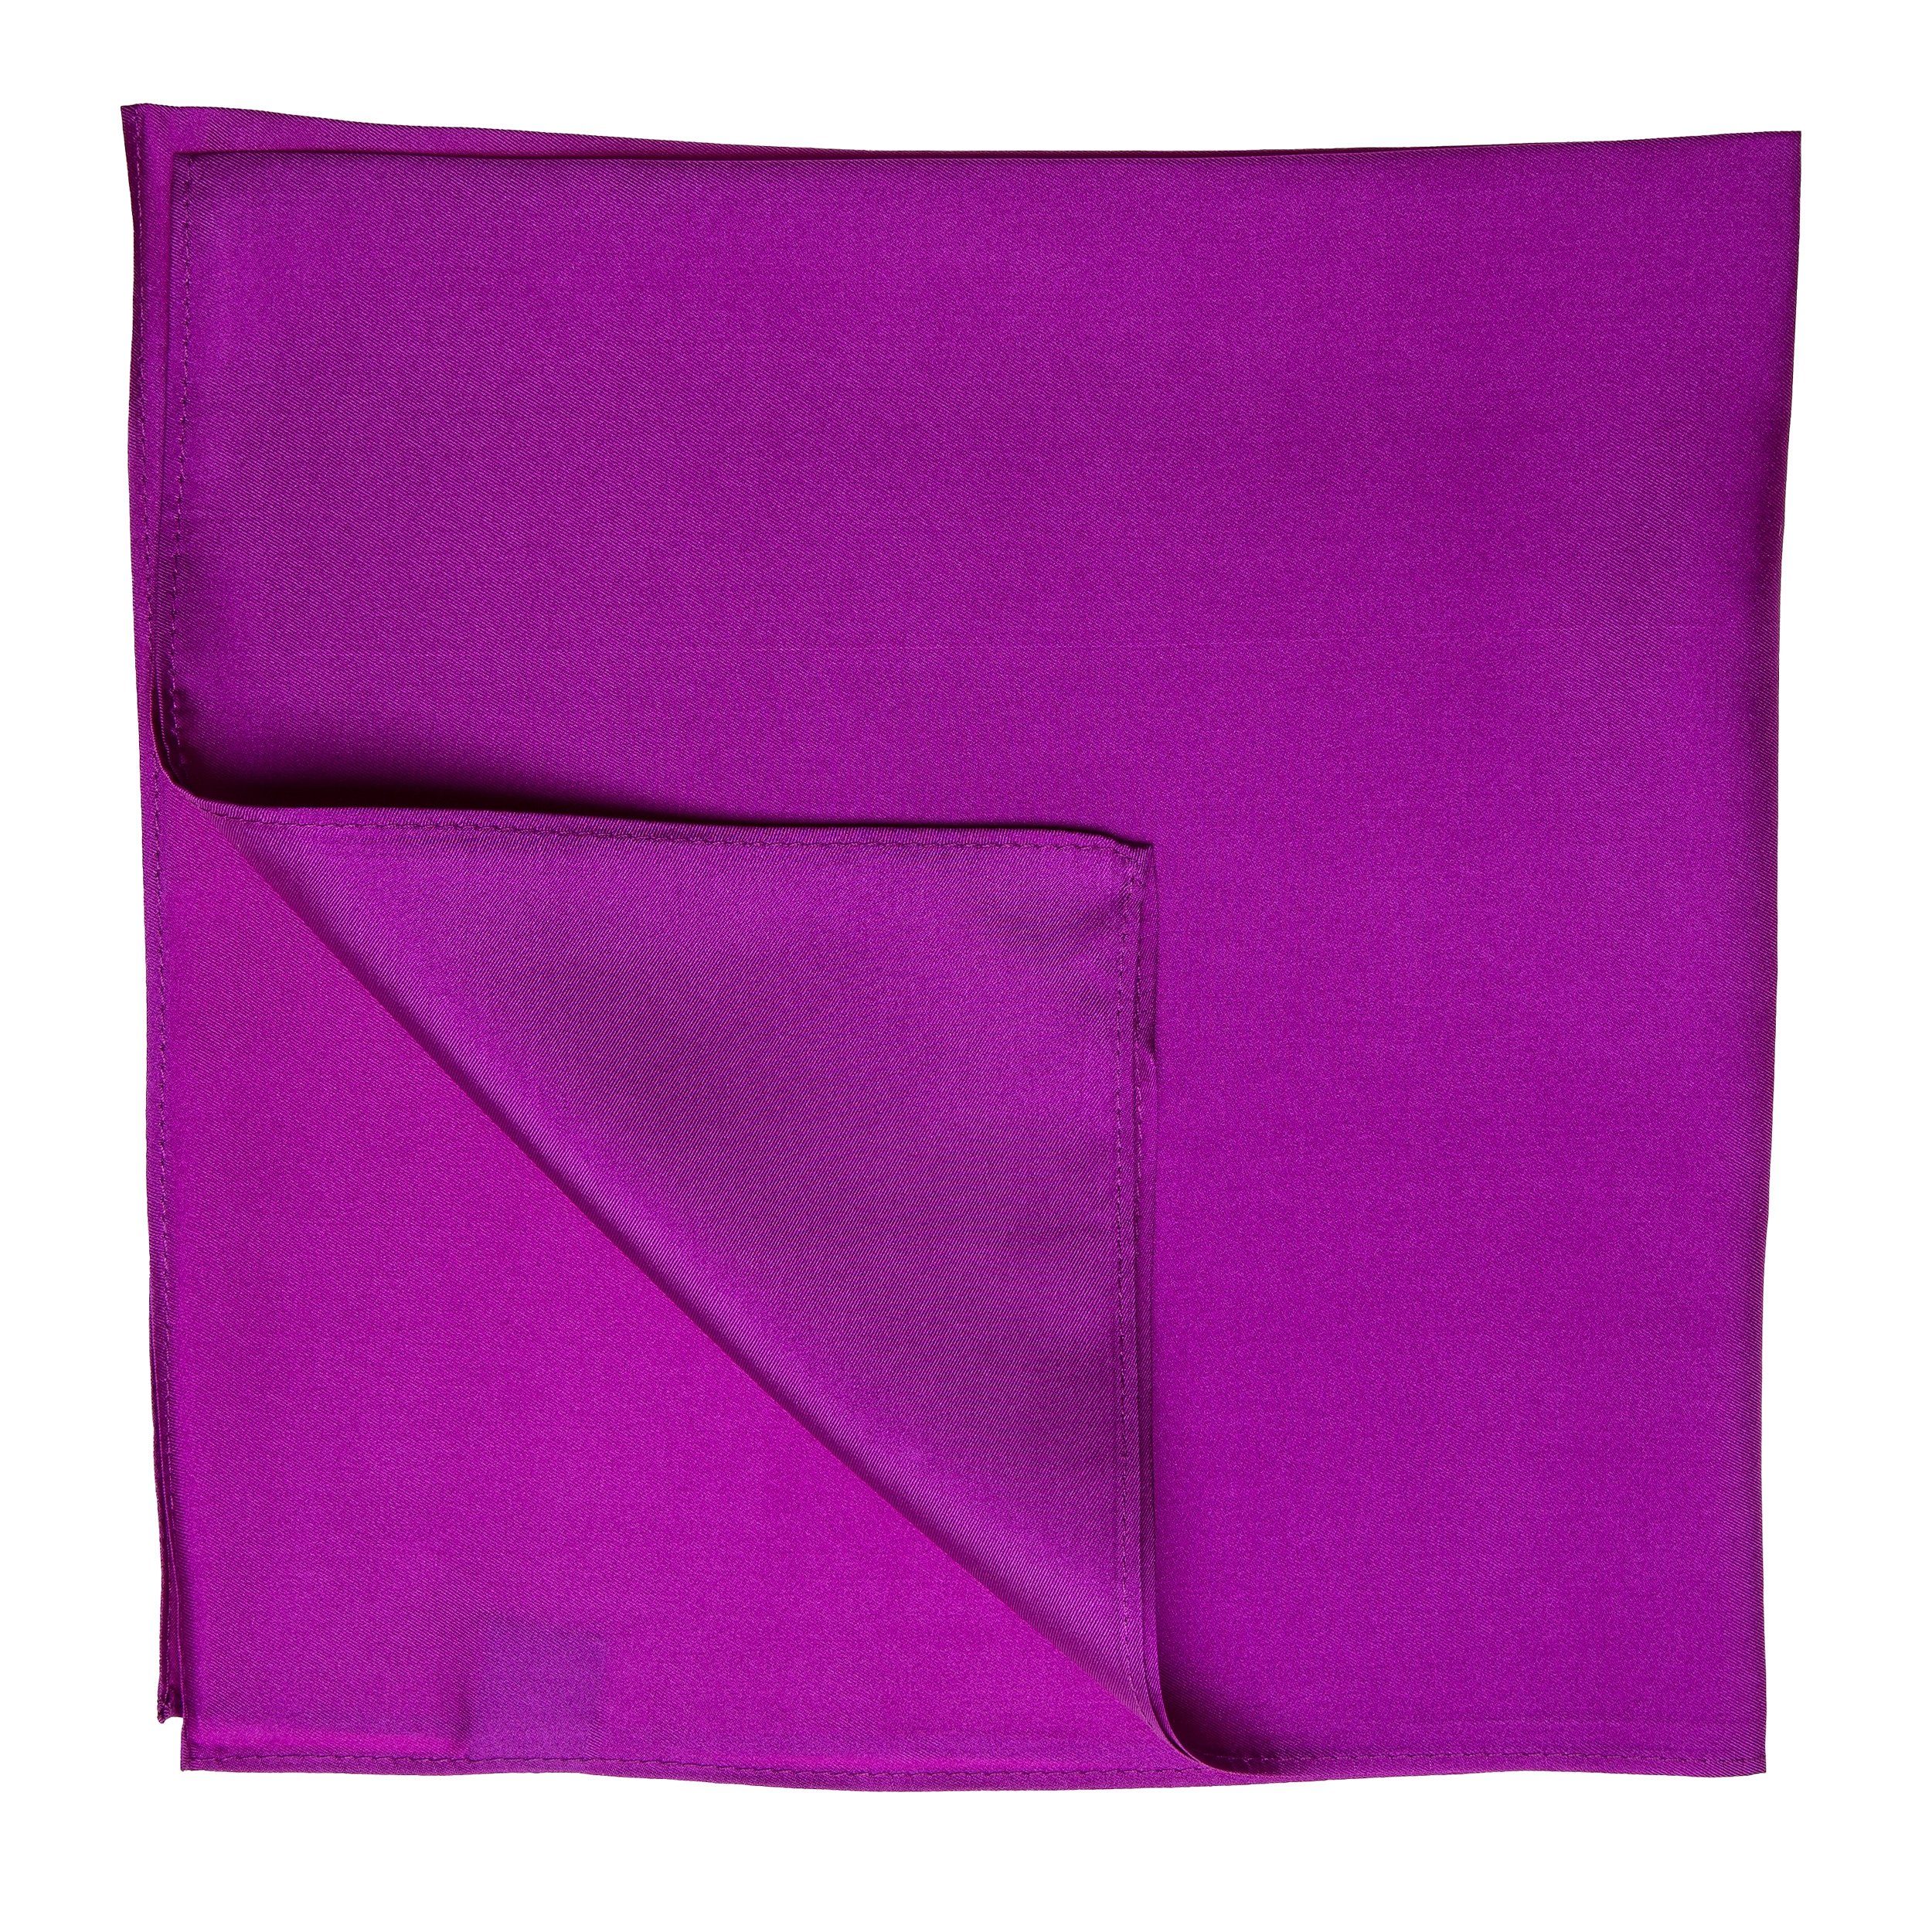 TINITEX Seidentuch Nickituch Halstuch purpur-violett Twill